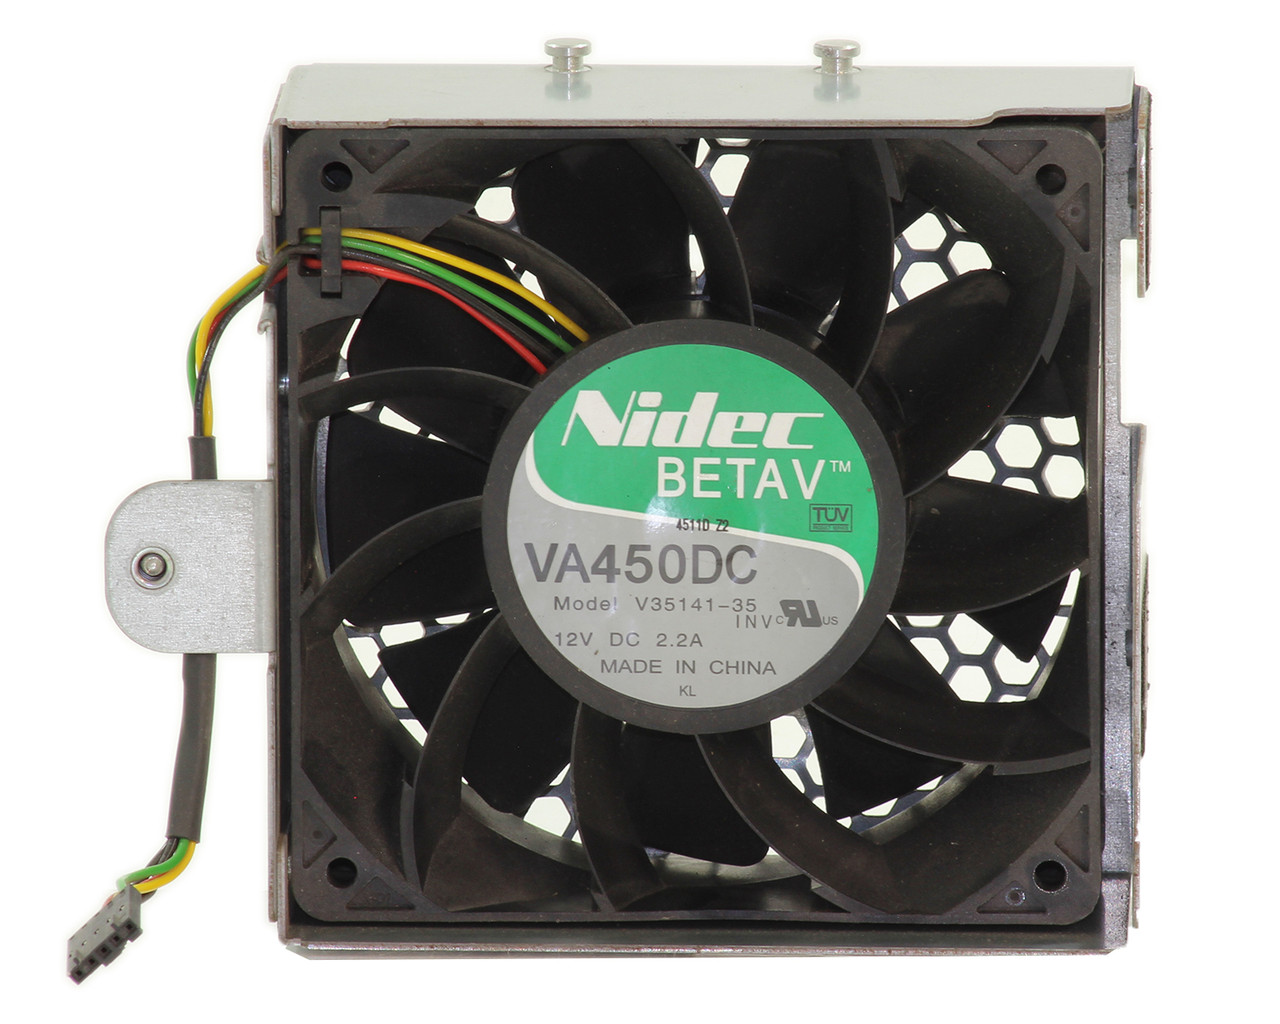 Nidec Beta V V35141-35 Square Server Fan VA450DC 2.2A 12V DC